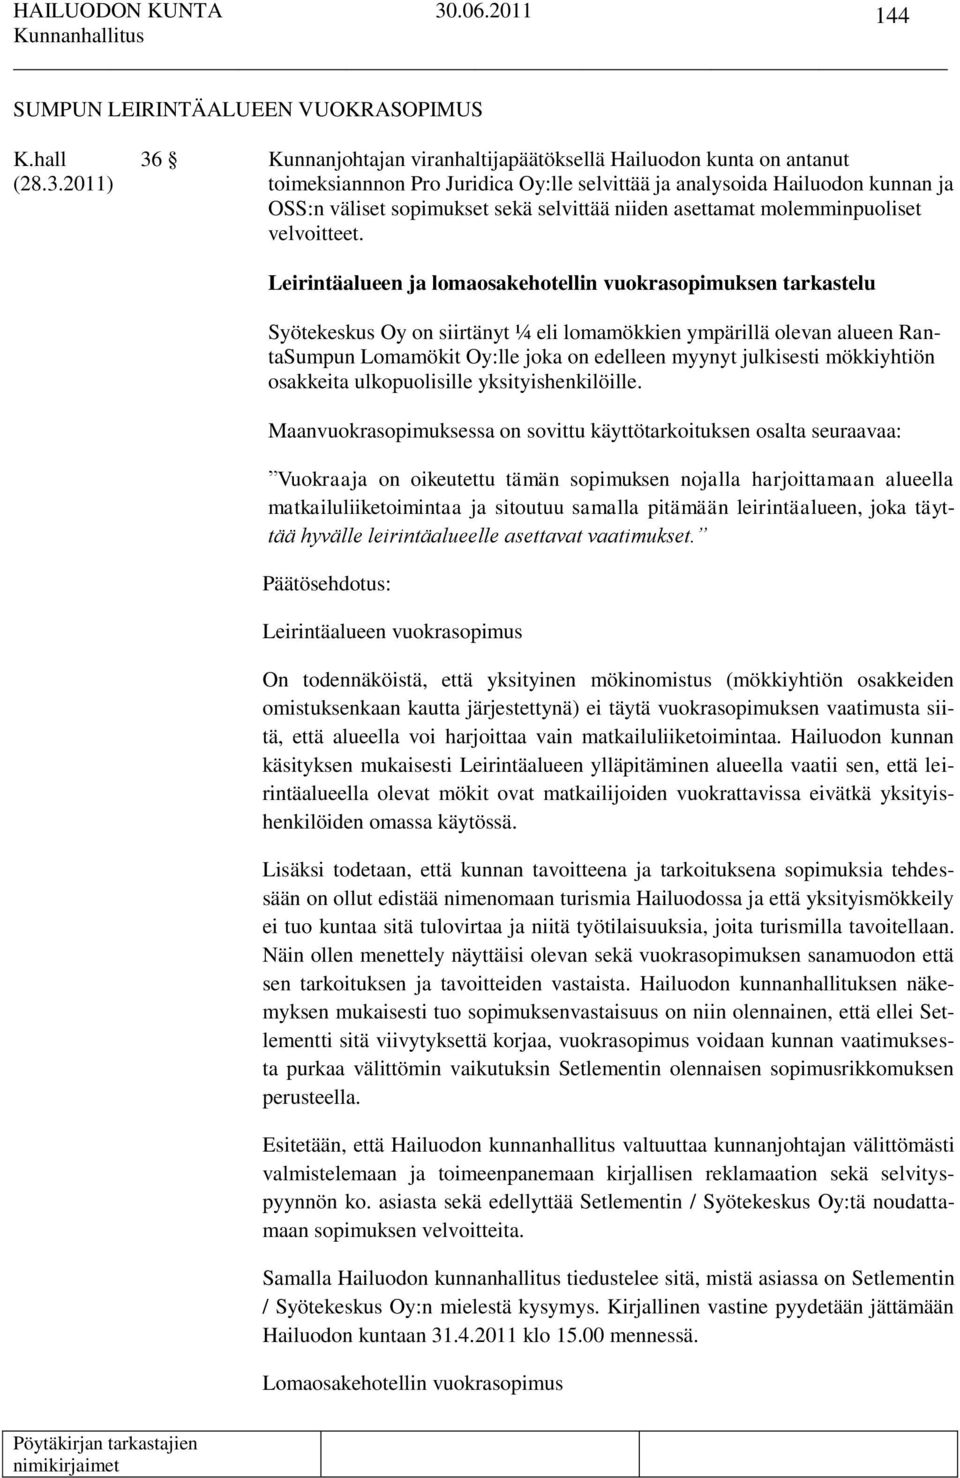 2011) toimeksiannnon Pro Juridica Oy:lle selvittää ja analysoida Hailuodon kunnan ja OSS:n väliset sopimukset sekä selvittää niiden asettamat molemminpuoliset velvoitteet.